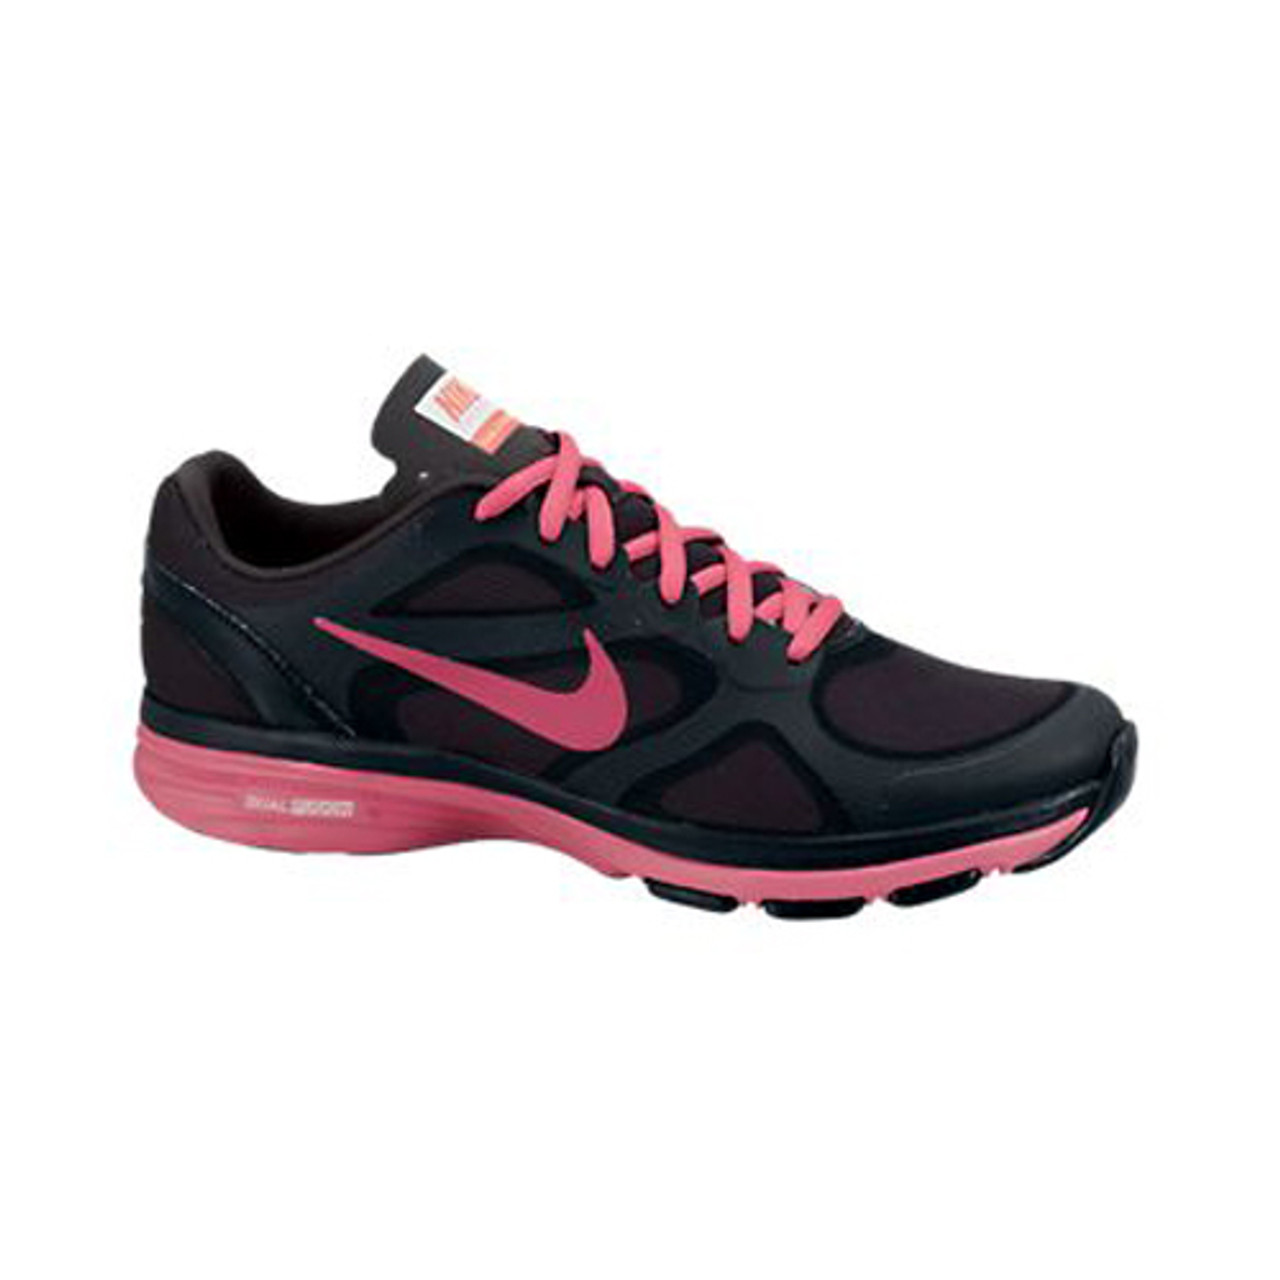 Nike Dual TR Cross Trainer Black/Pink Ladies Athletic - | Ladies Athletic & More - Shoolu.com | Shoolu.com